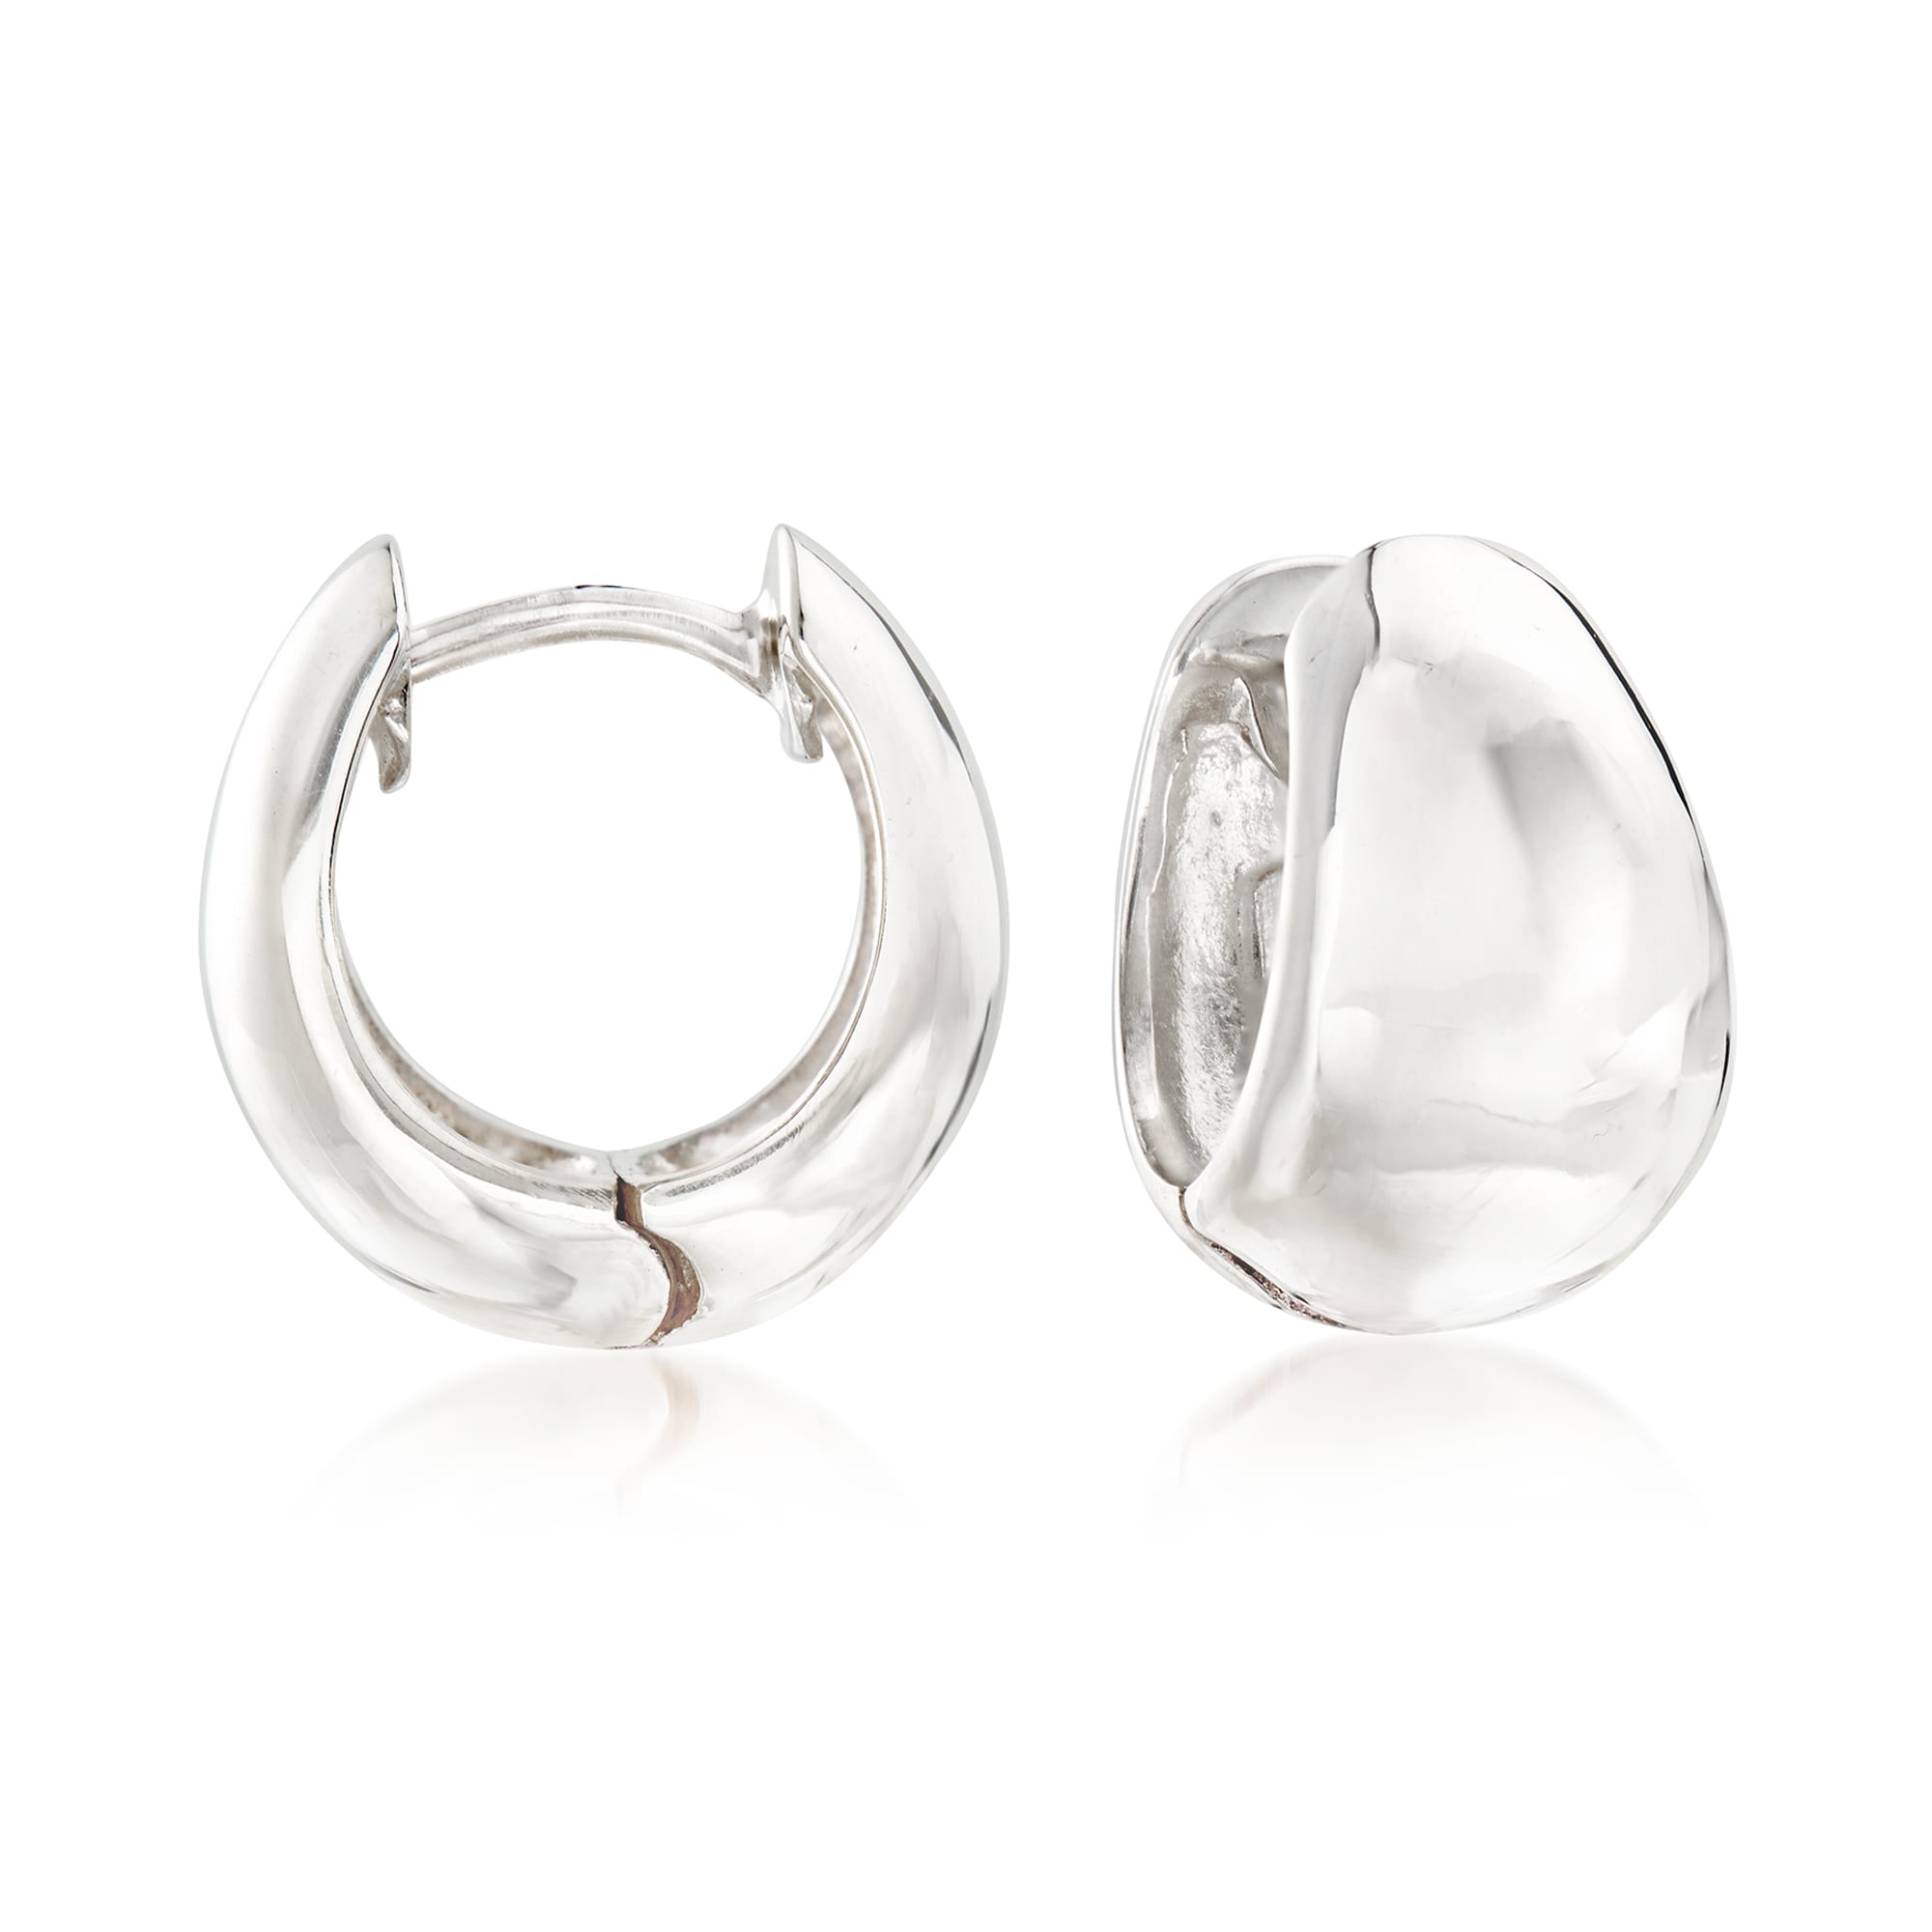 Zina Sterling Silver Tapered Hoop Earrings. 1/2